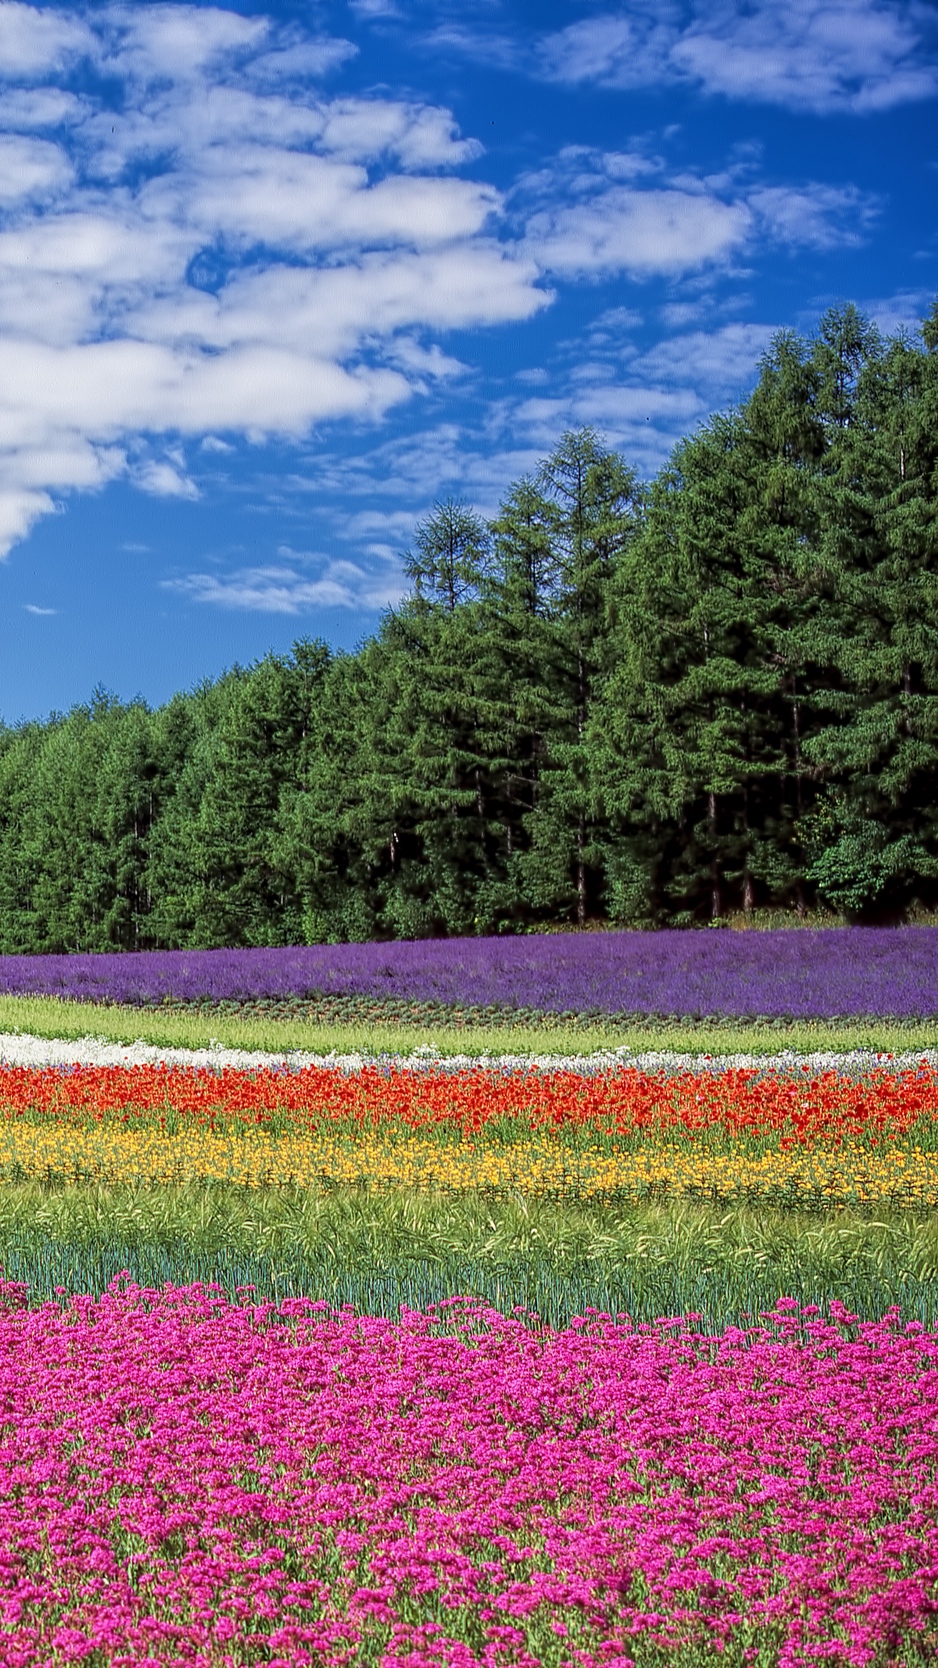 Download wallpaper 938x1668 hokkaido, japan, flowers, field iphone 8